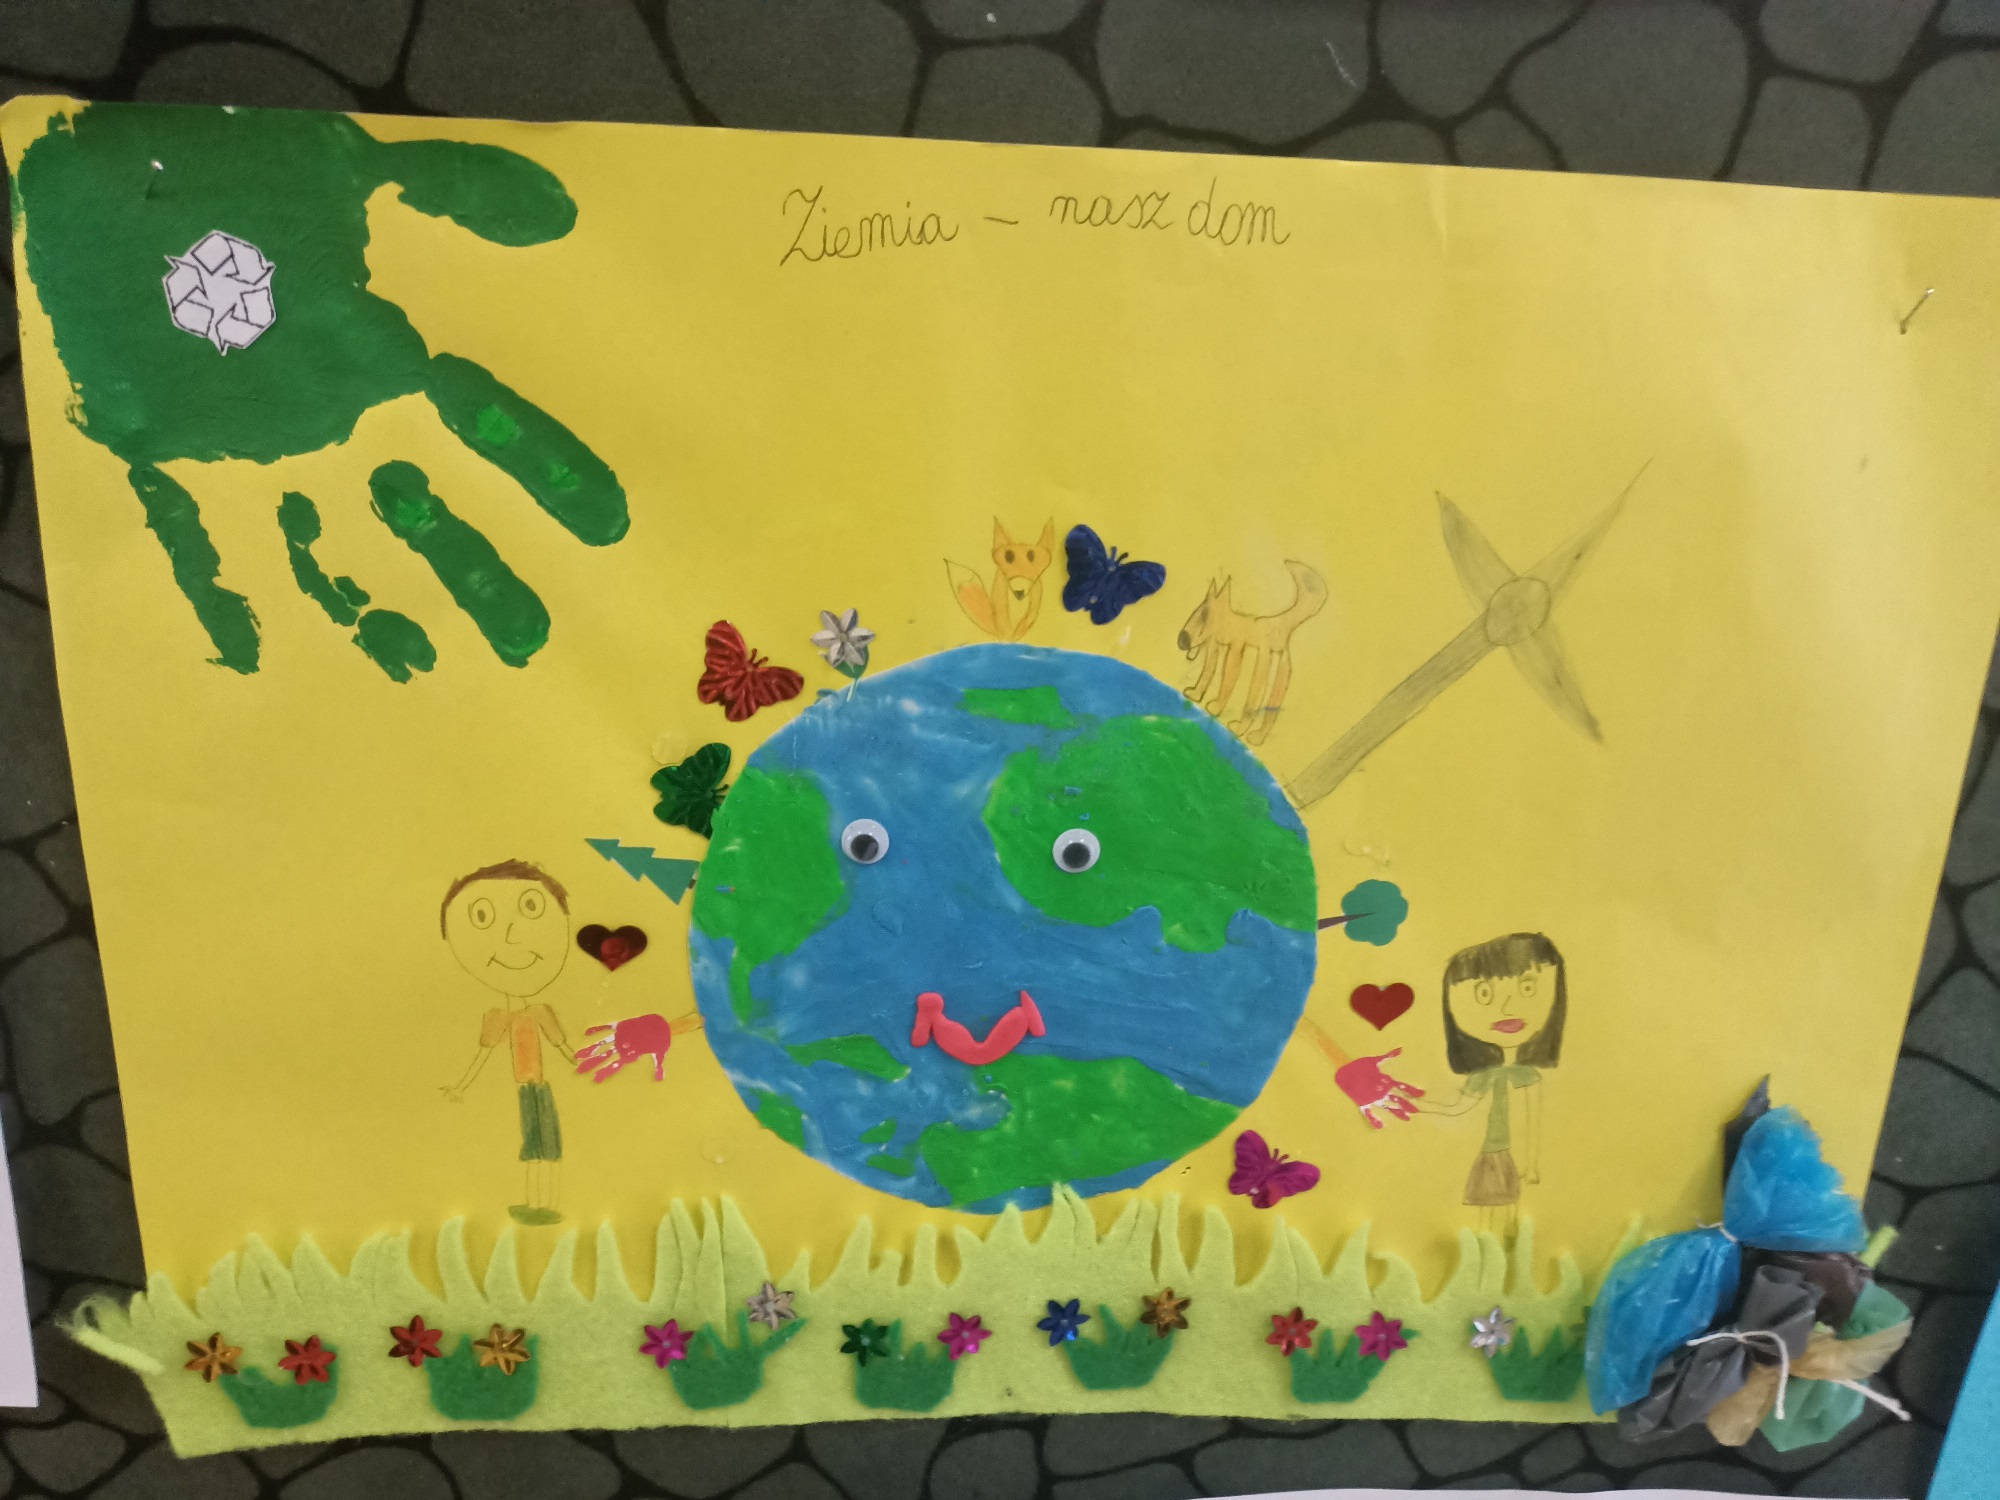 Obrazek z namalowaną planetą Ziemia oraz zielonym odciskiem ręki